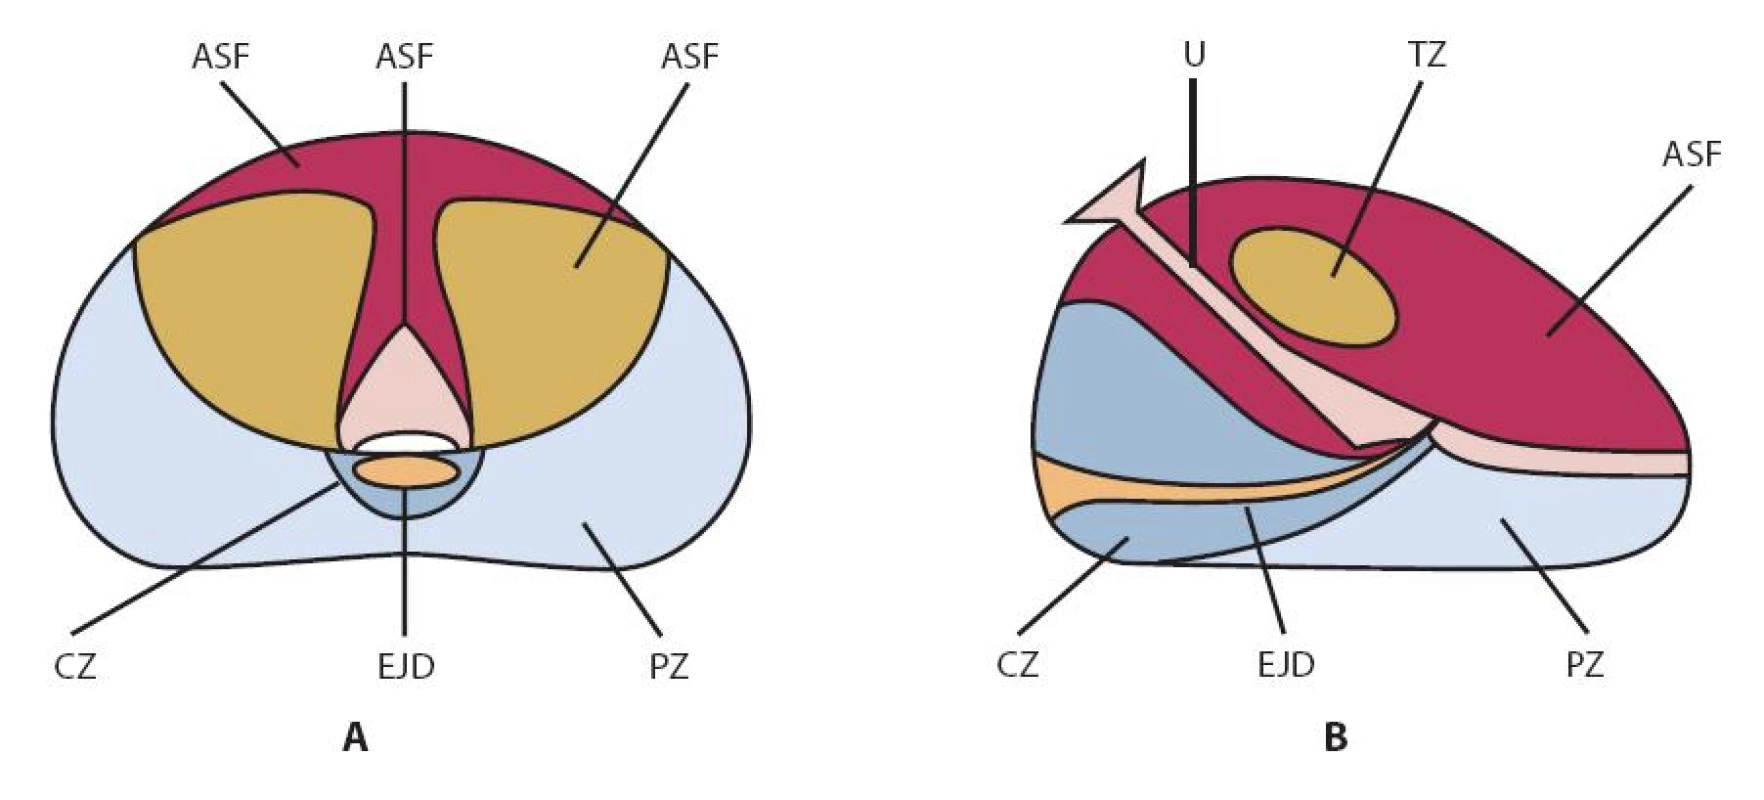 McNealovo schéma zonální anatomie prostaty (podle (17))
A – sagitální řez; B – transverzální řez. AFS – fi bromuskulární stroma , CZ – centrální zóna, EJD – ductus ejaculatorii, NVB – neurovaskulární svazek, PZ – periferní zóna, TZ – tranzicionální zóna, U – uretra
Fig. 1. McNeal scheme of the prostatic zonal anatomy (adapted from (17))
A – sagittal section; B – transversal section. AFS – anterior fi bromuscular stroma, CZ – central zone, EJD – ejaculatory ducts, PZ – peripheral zone, TZ – transitional zone, U – urethra